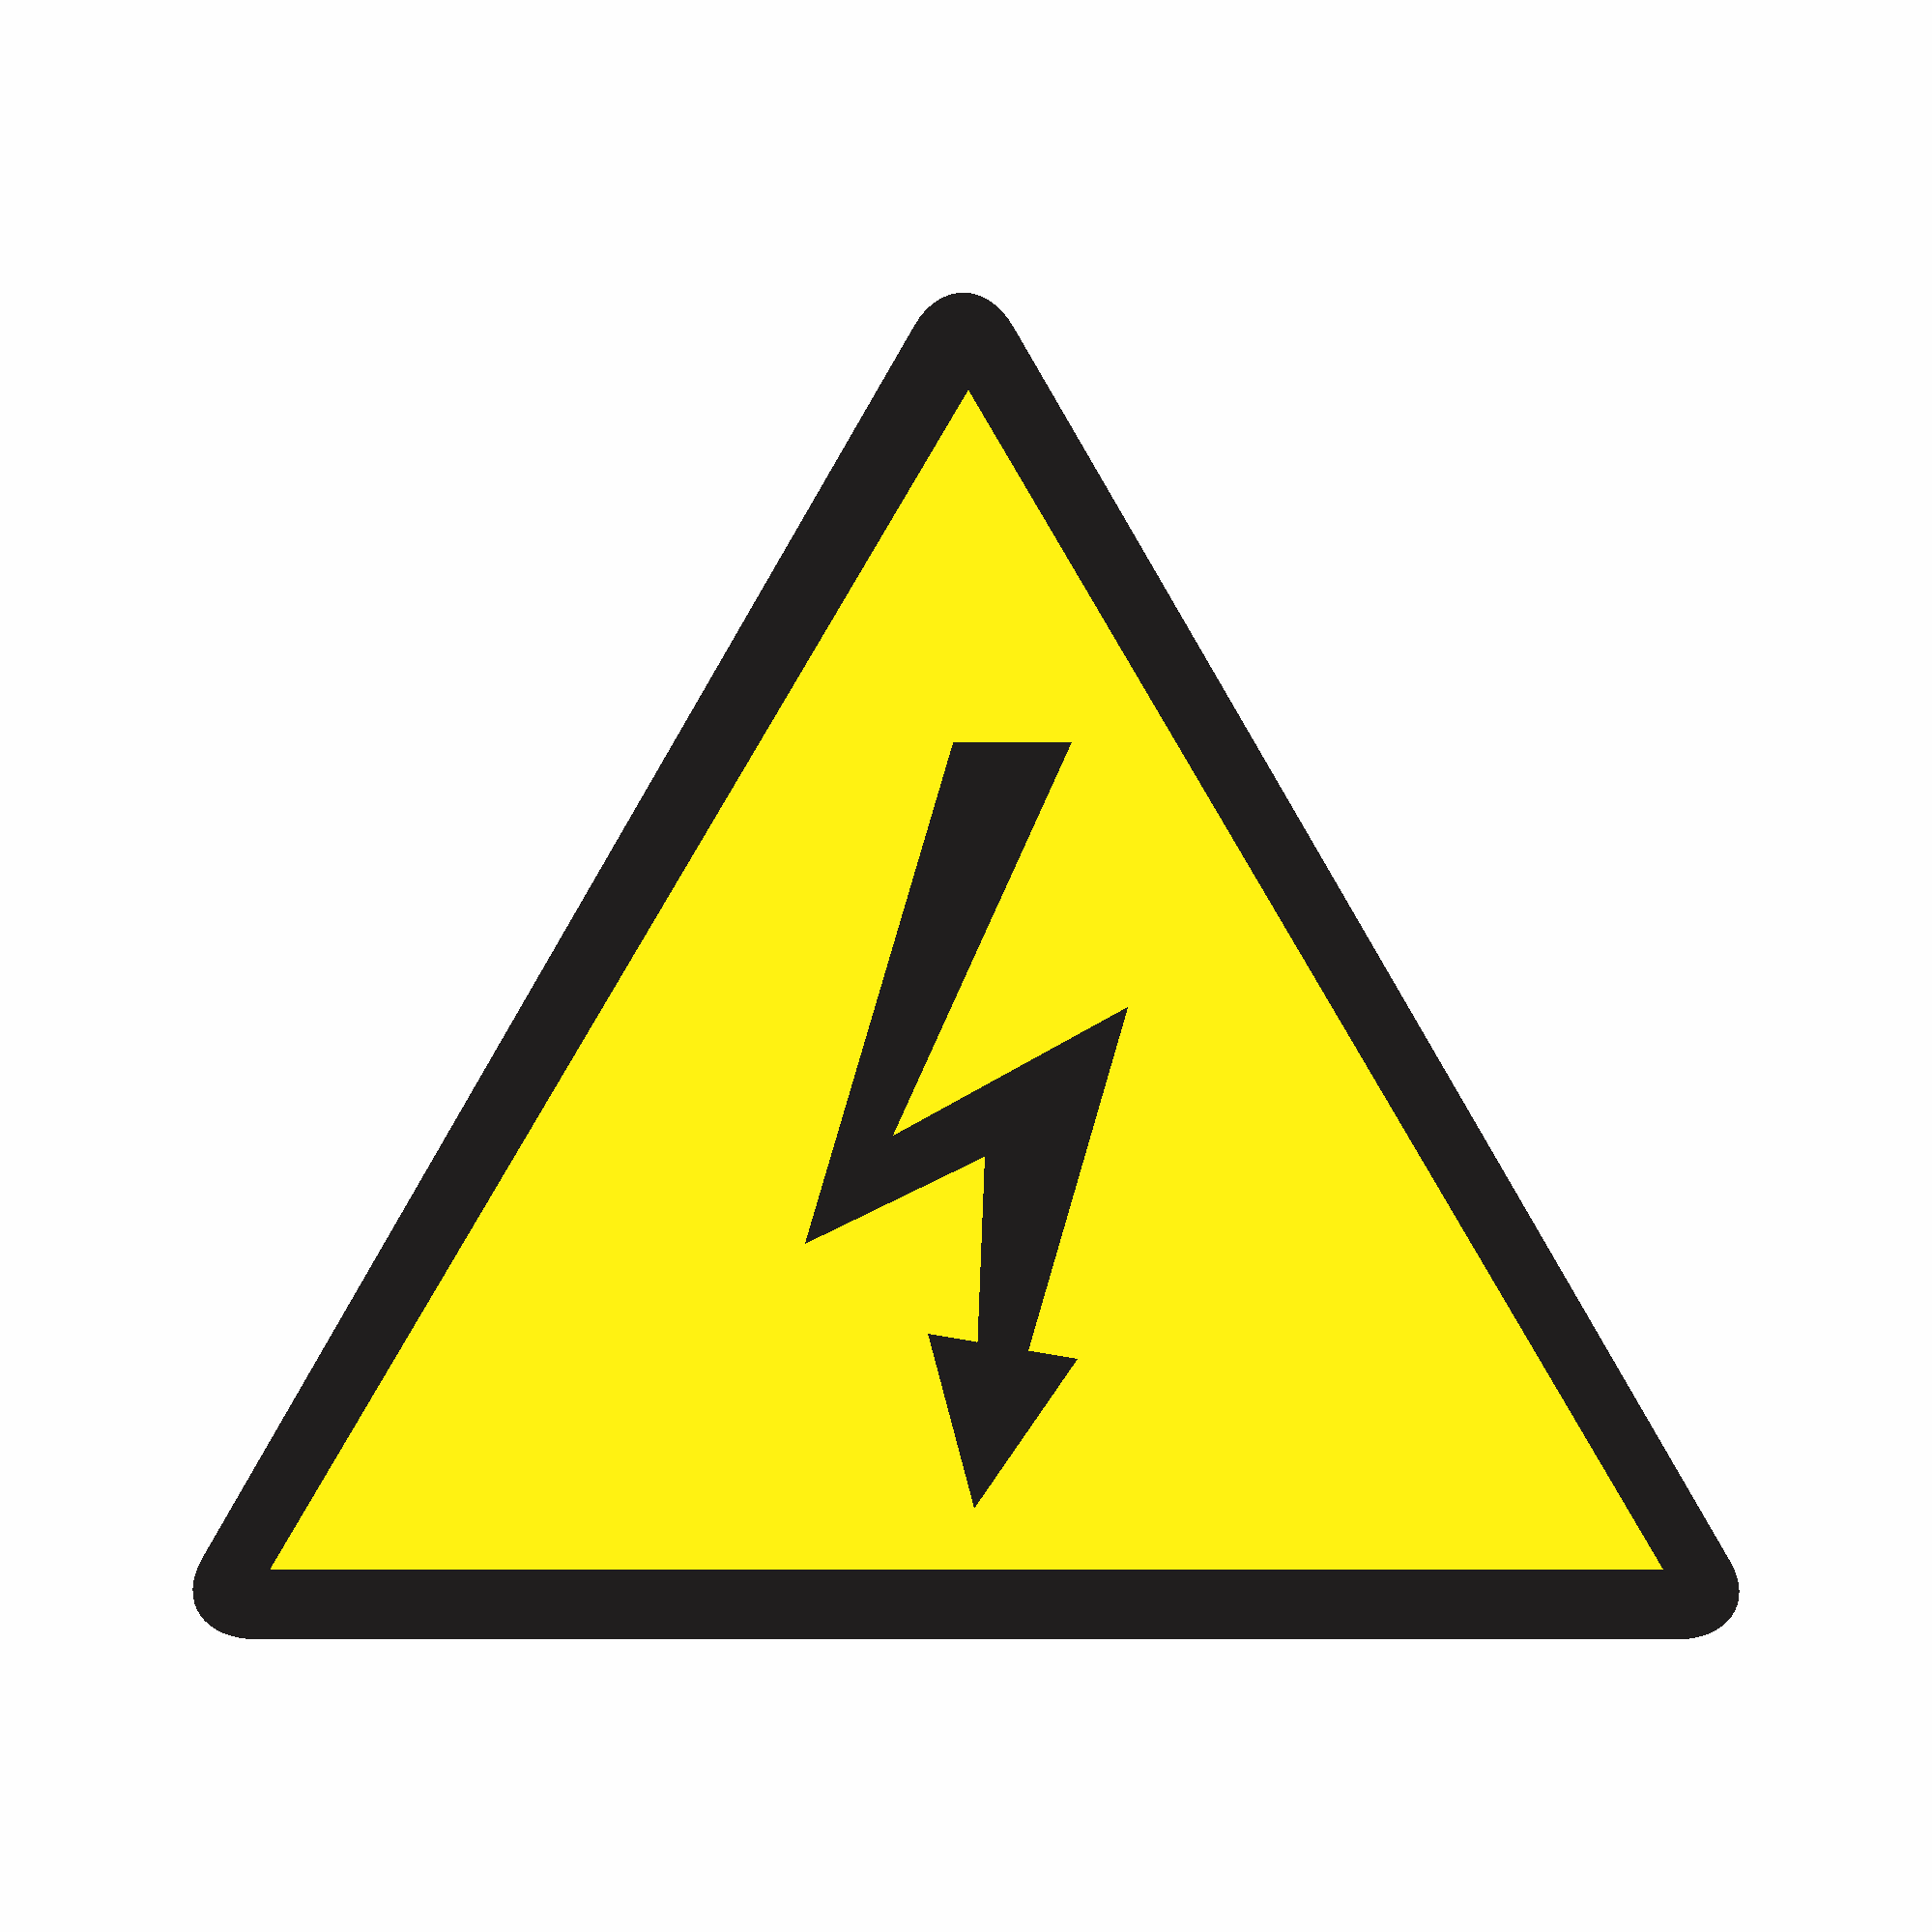 A5 - Cuidado, risco de choque elétrico